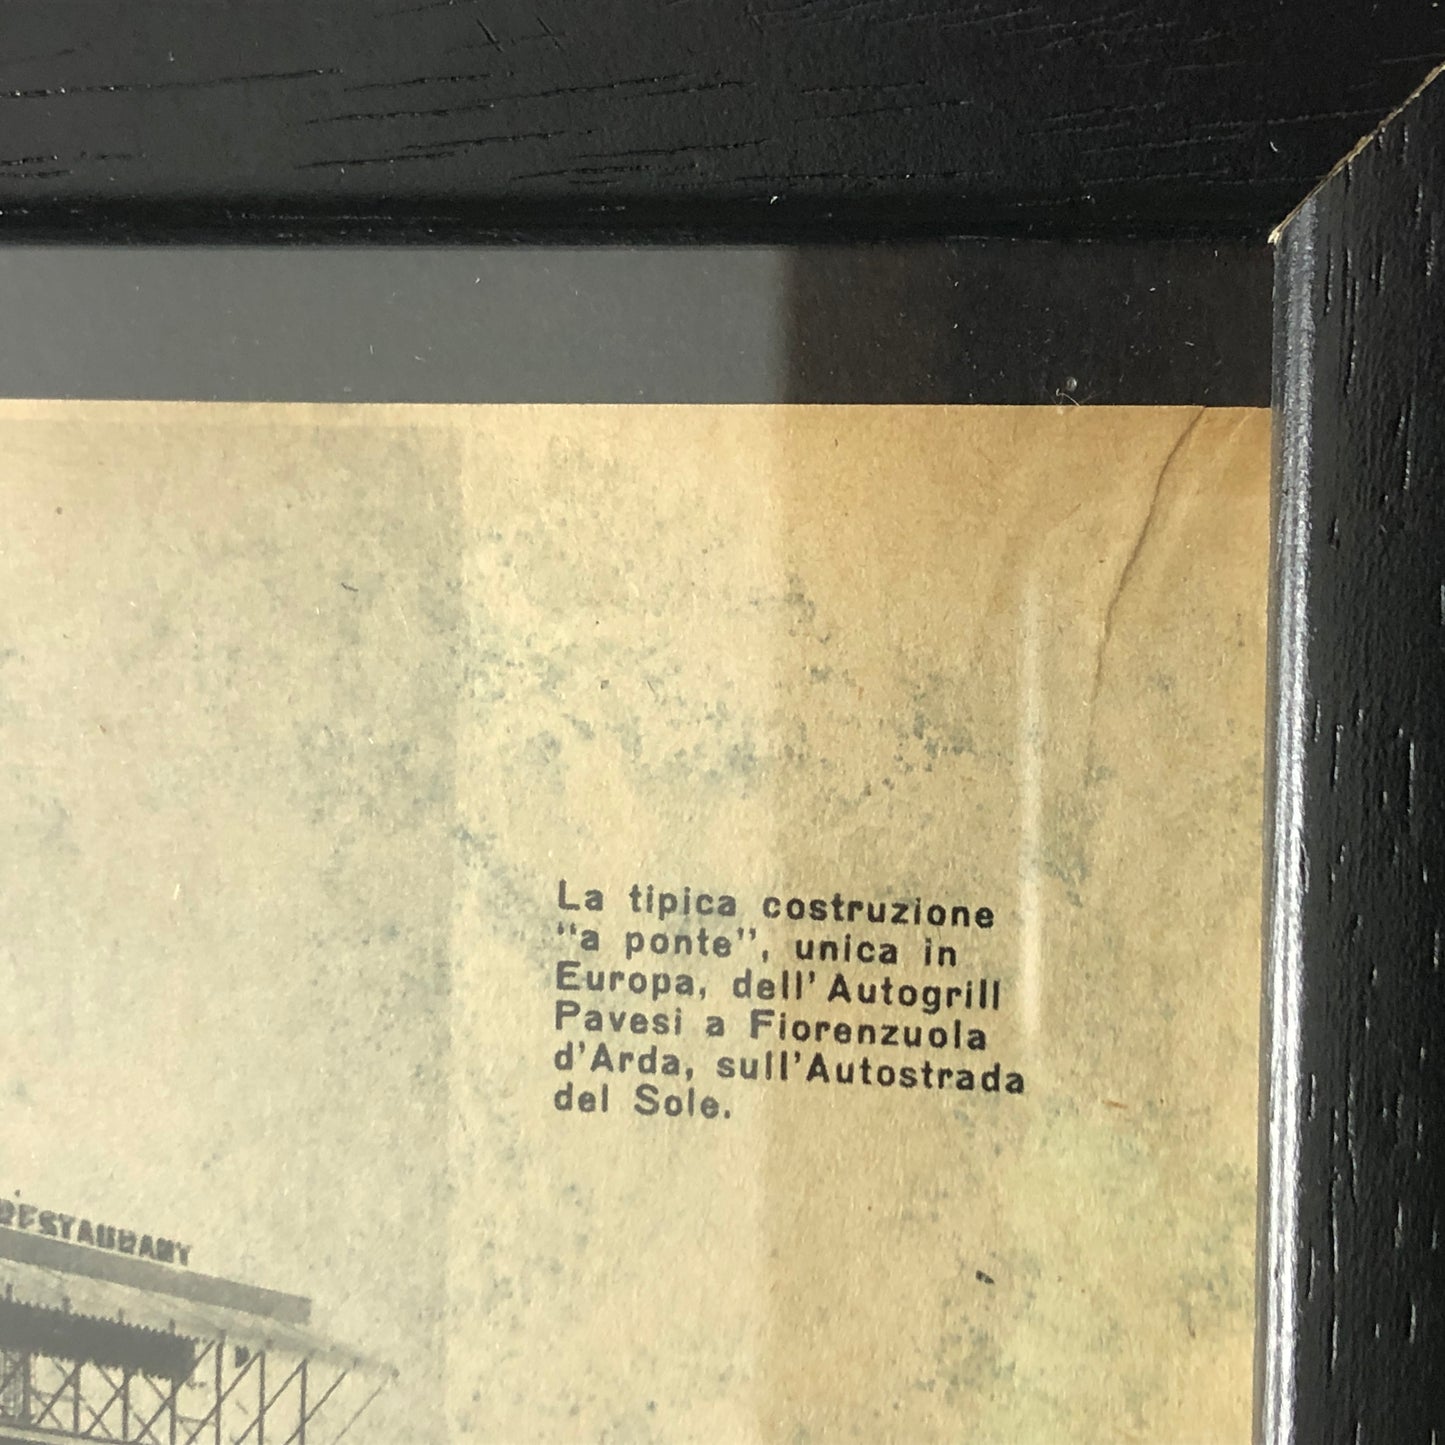 Autogrill Pavesi, Pubblicità Anno 1960 Autogrill Pavesi Ronco Scrivia e Lainate con Didascalia in Italiano